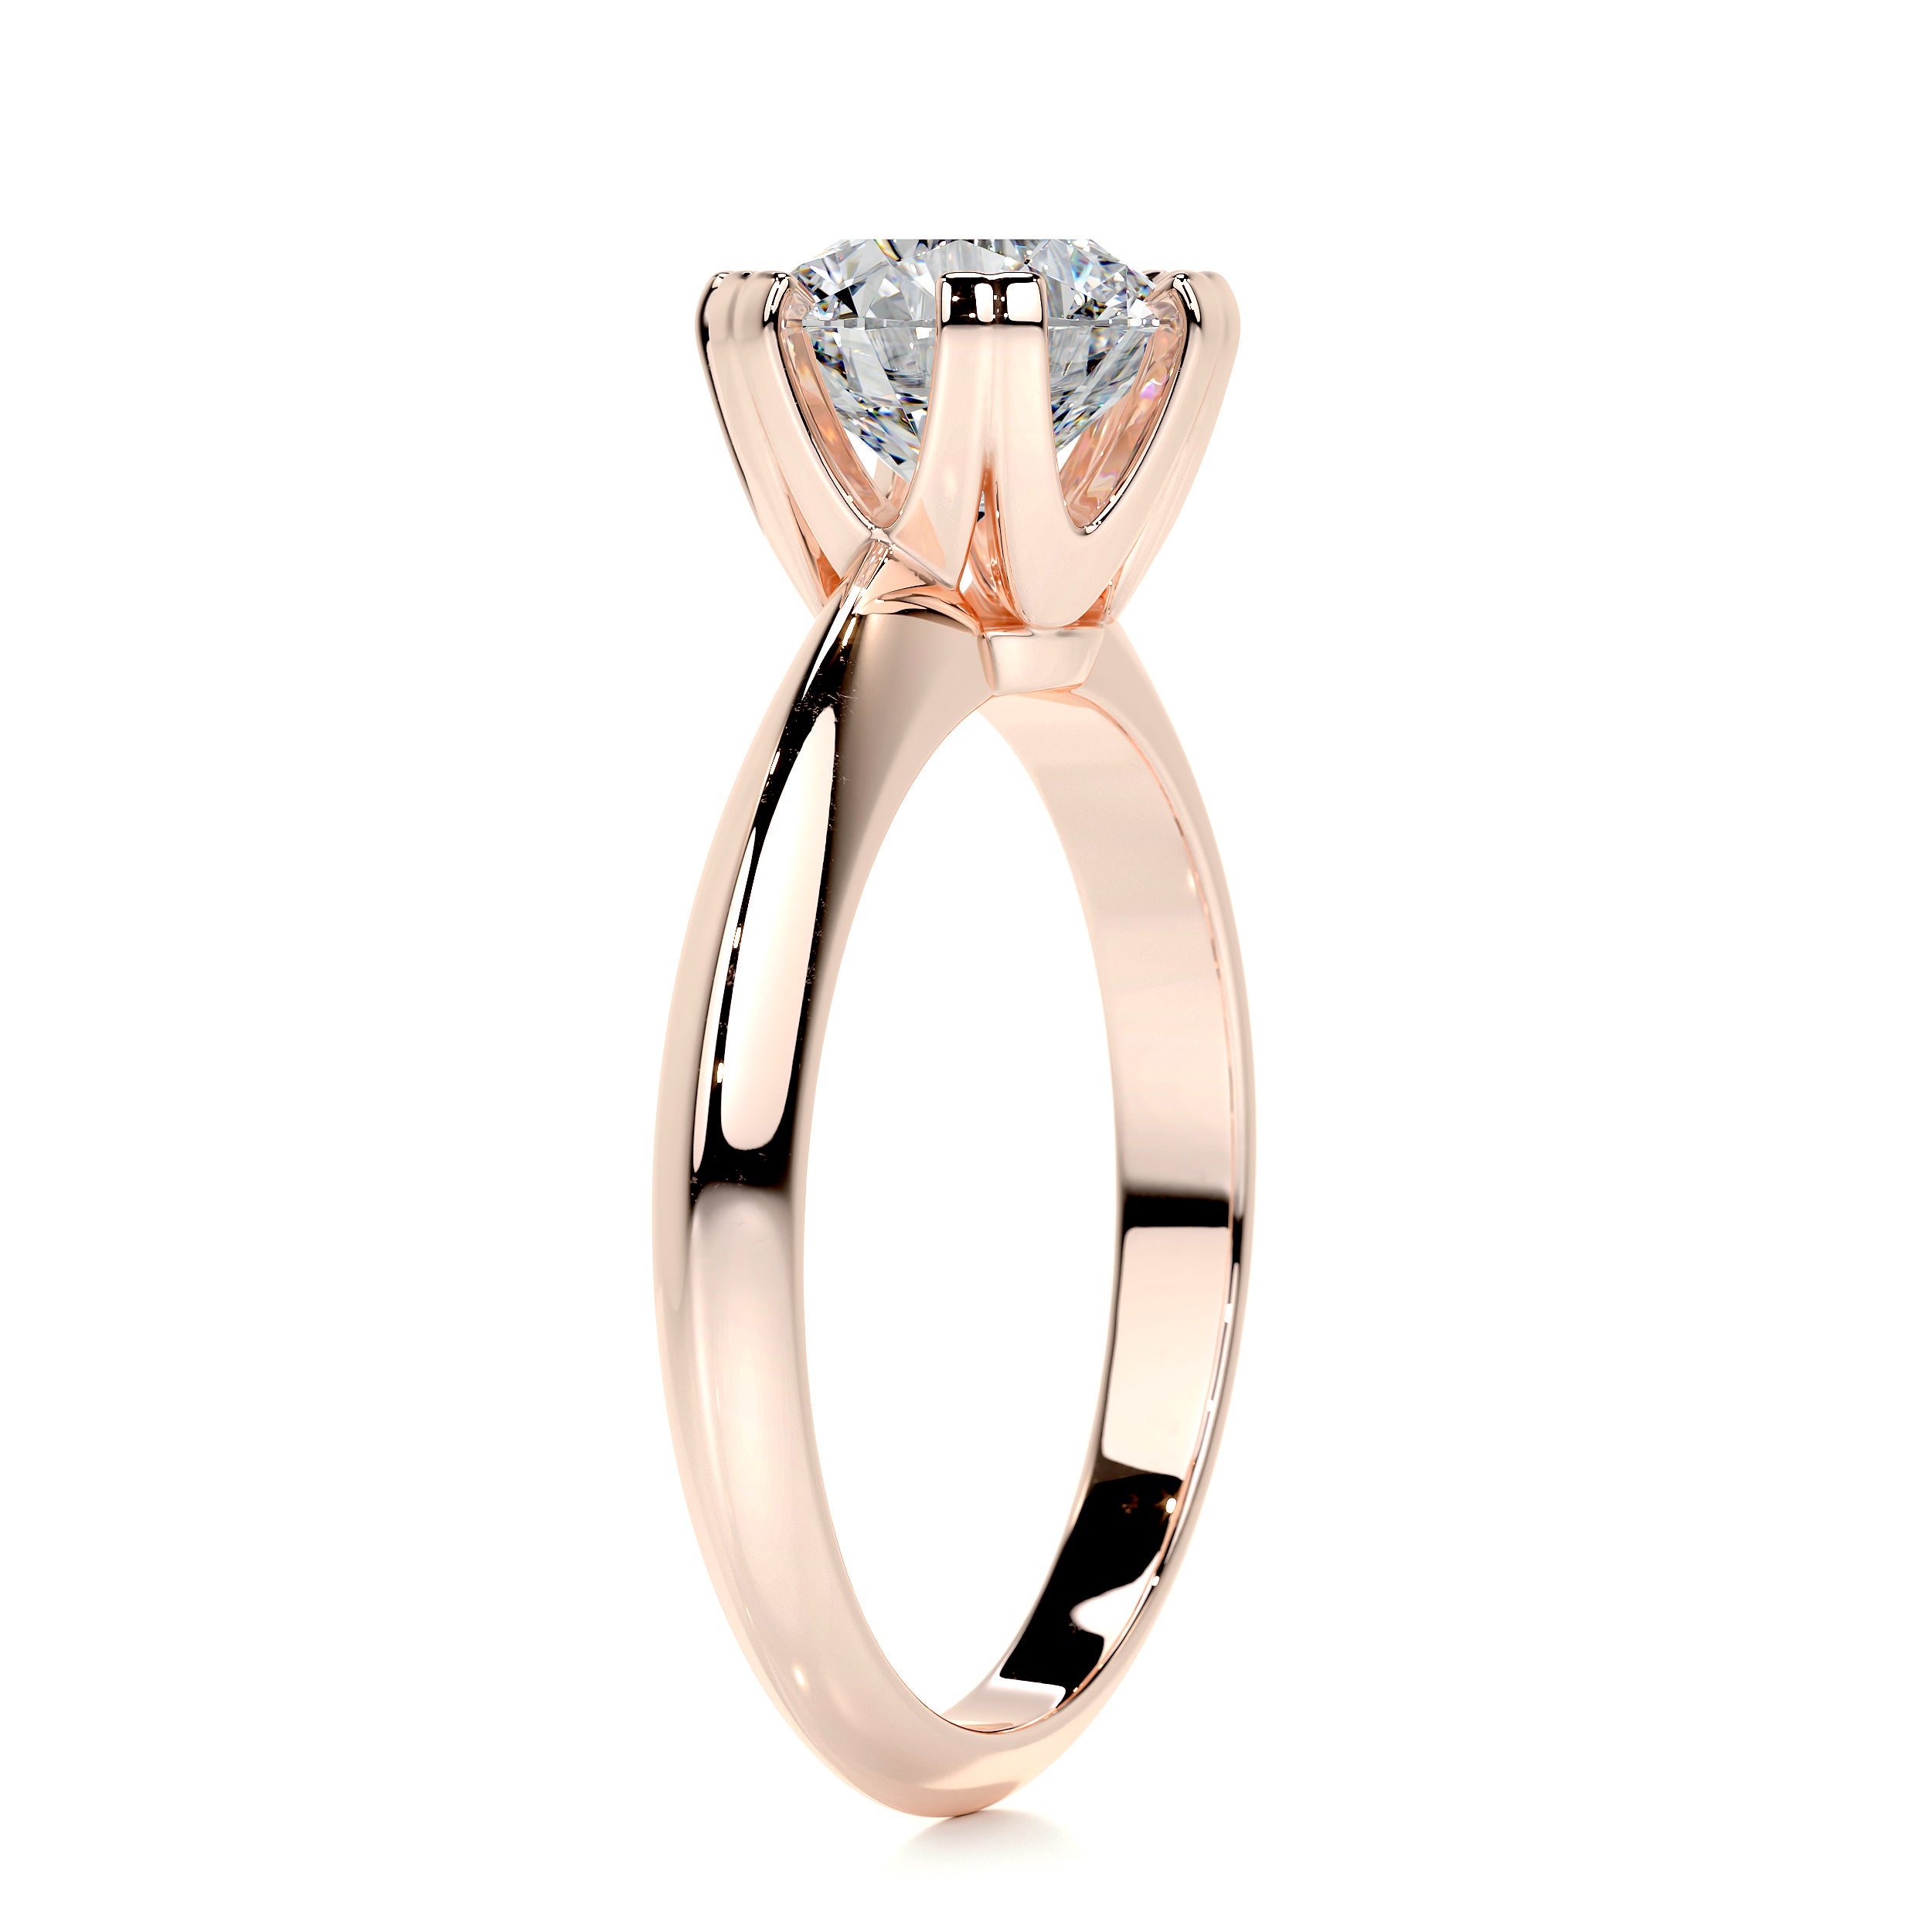 Alexis Diamond Engagement Ring   (1.5 Carat) -14K Rose Gold